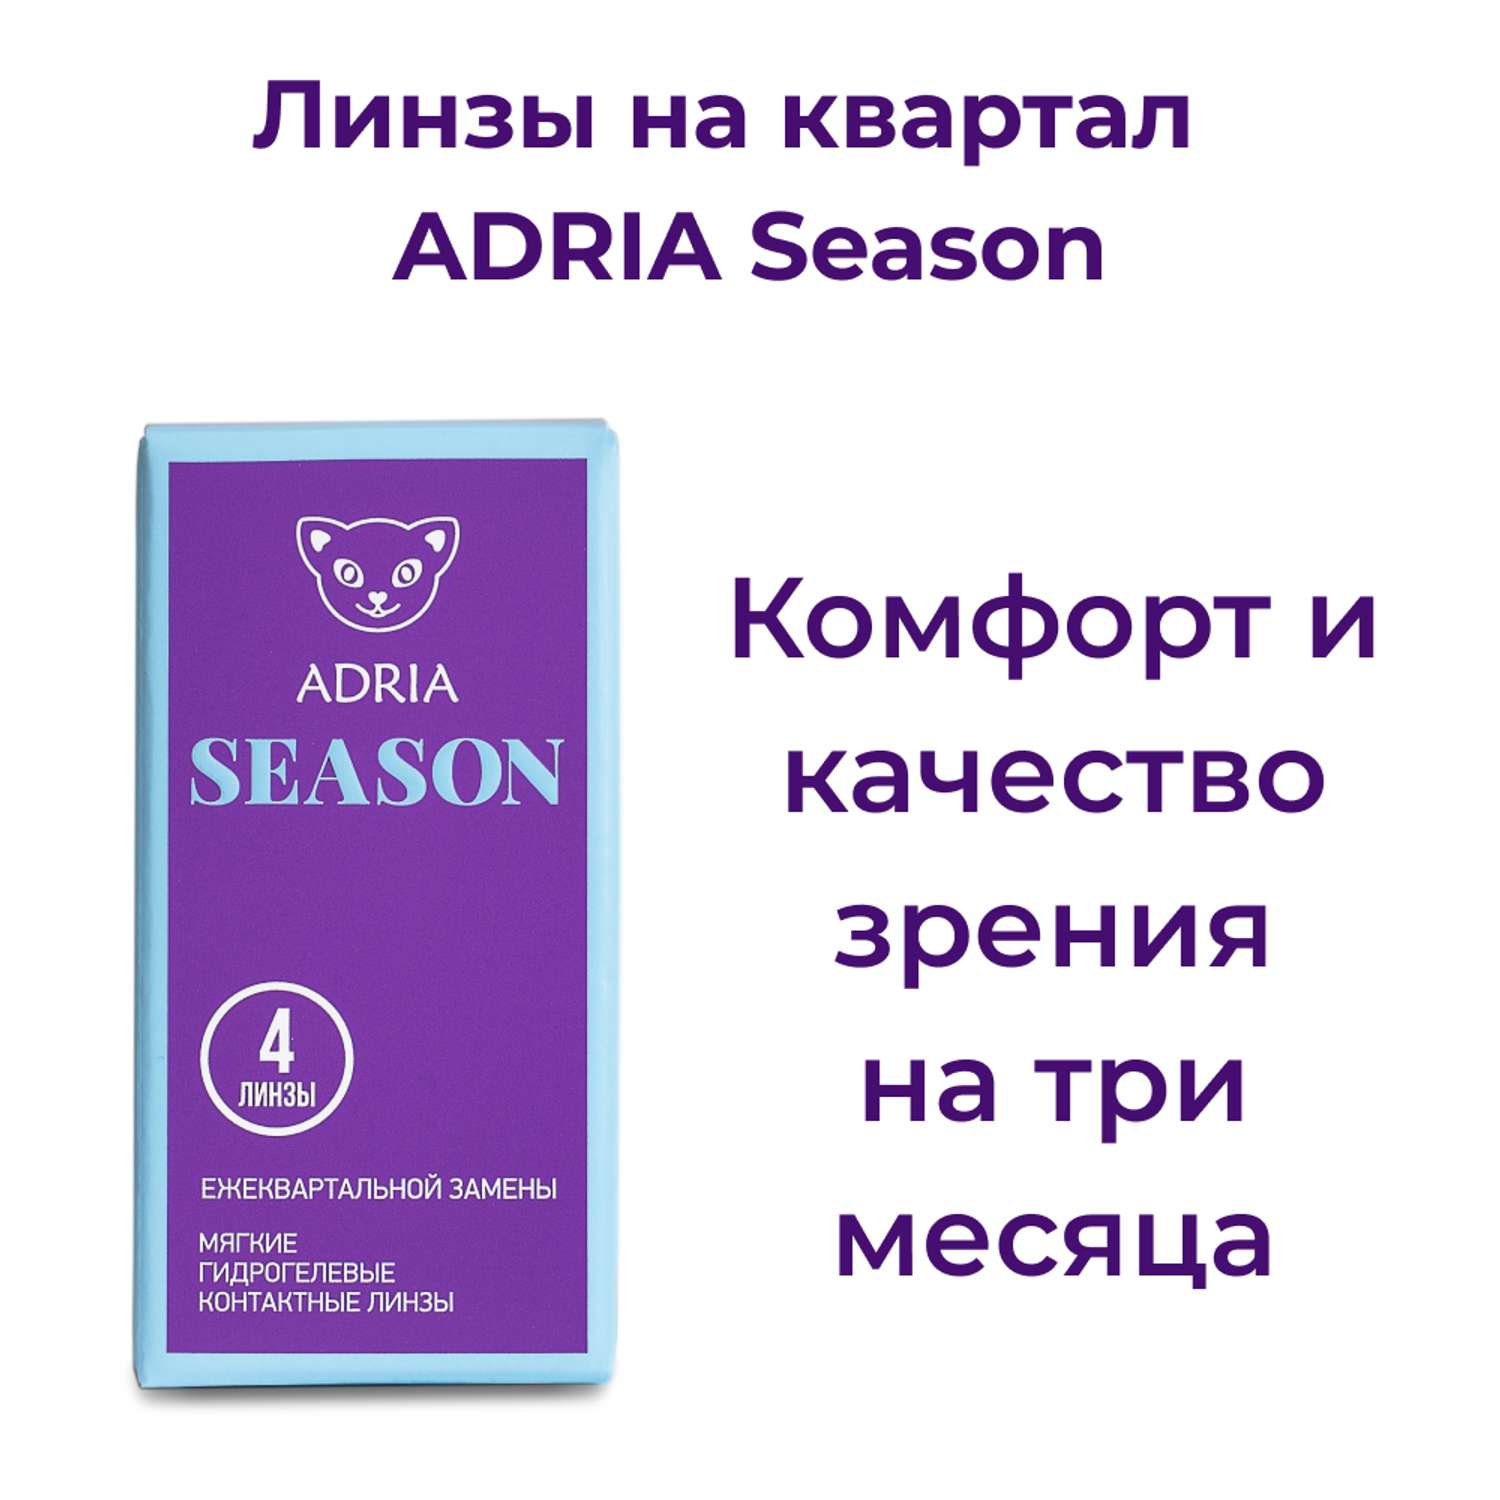 Контактные линзы ADRIA Season 4 линзы R 8.6 -3.75 - фото 2